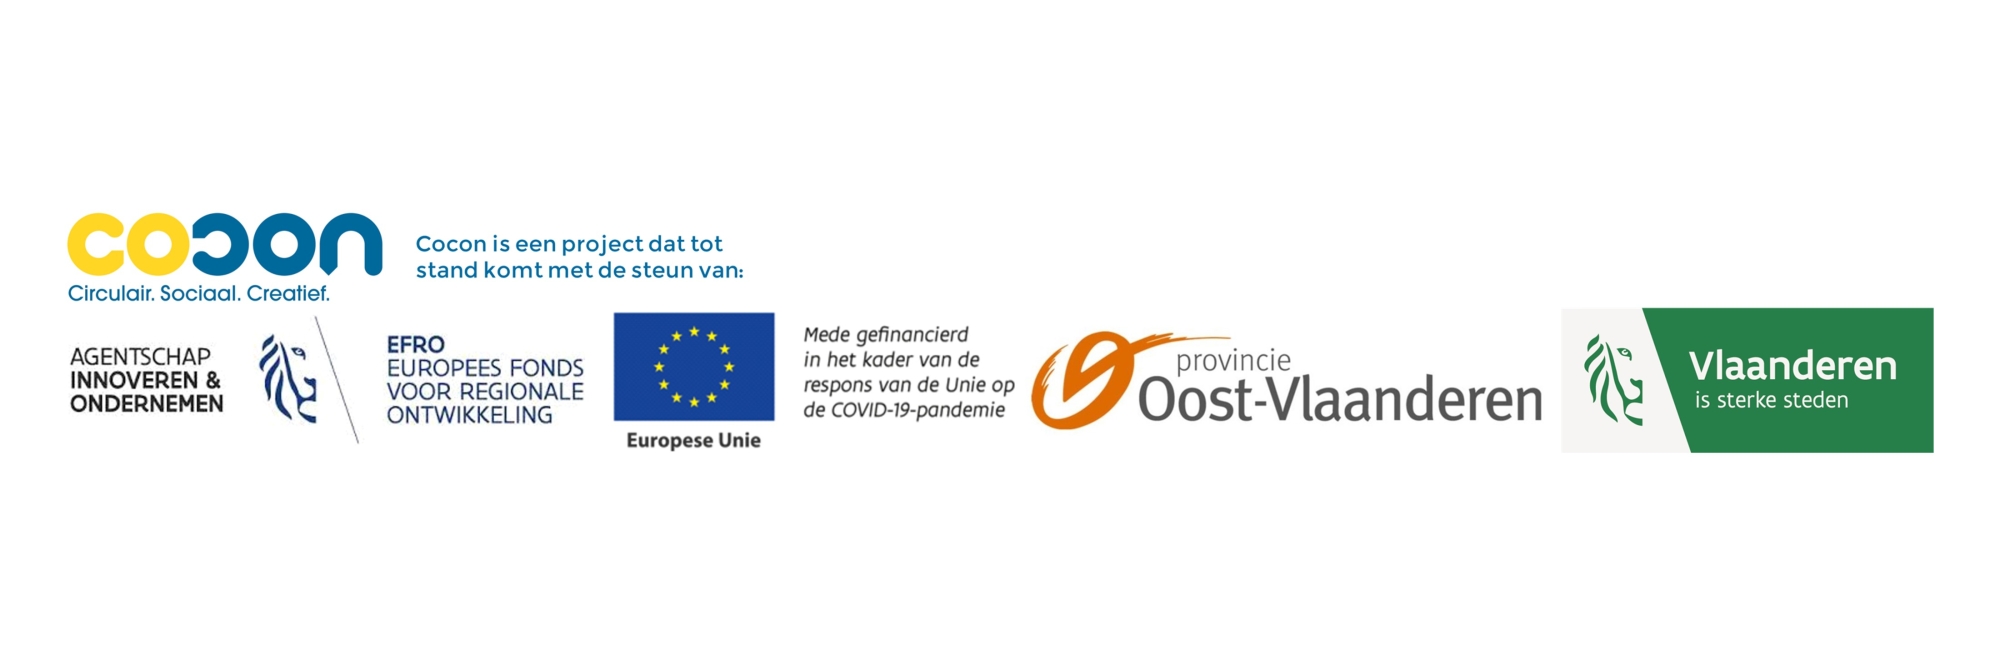 Project met steun van VLAIO, EFRO, EU en Provincie Oost-Vlaanderen